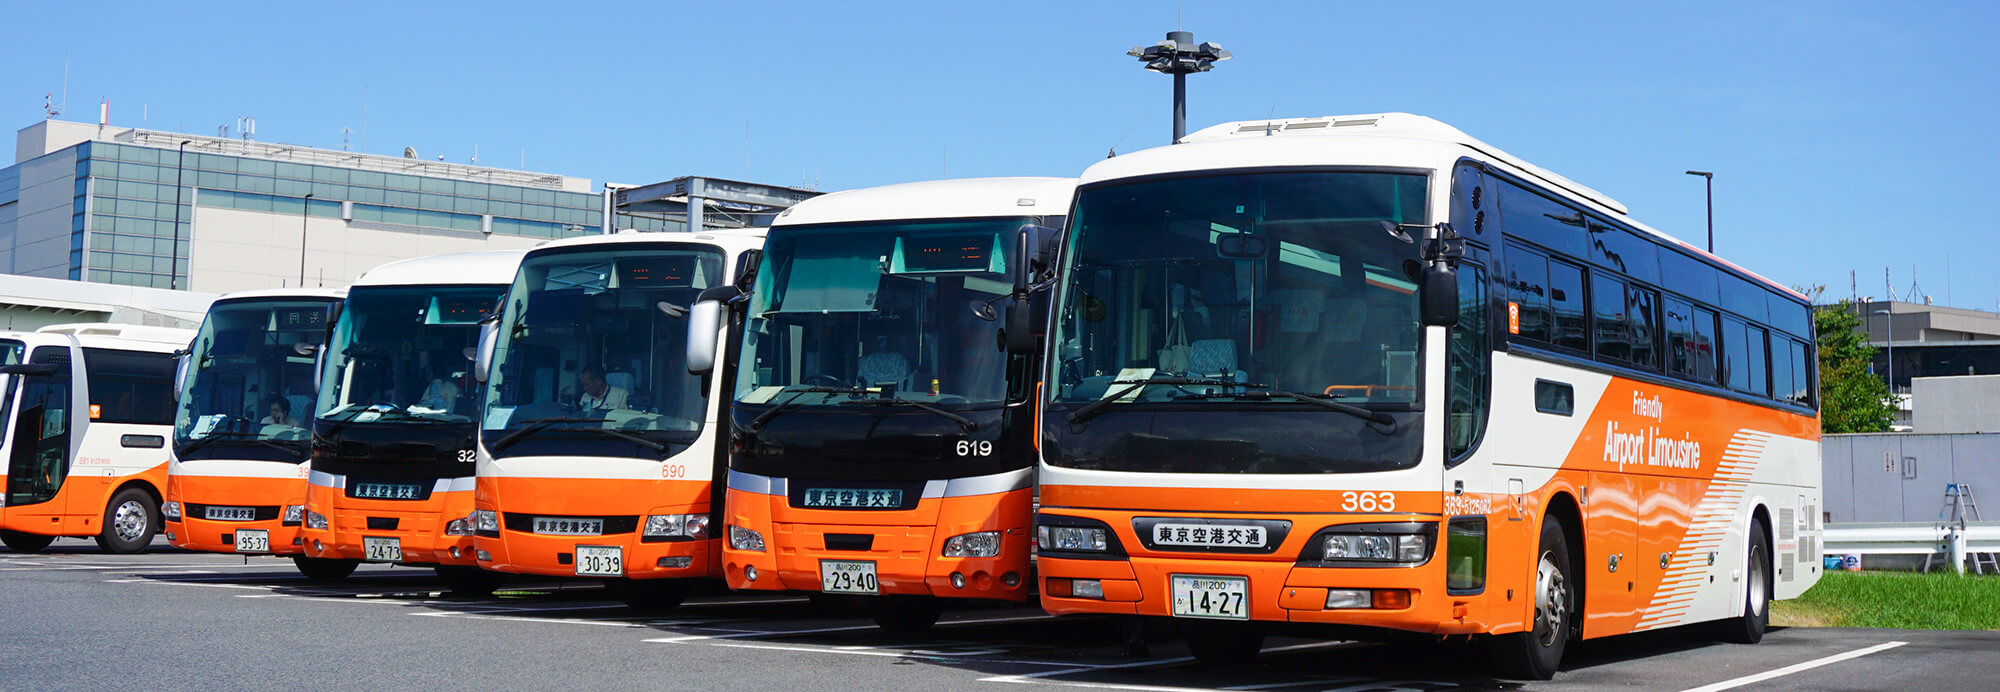 羽田 空港 リムジン バス